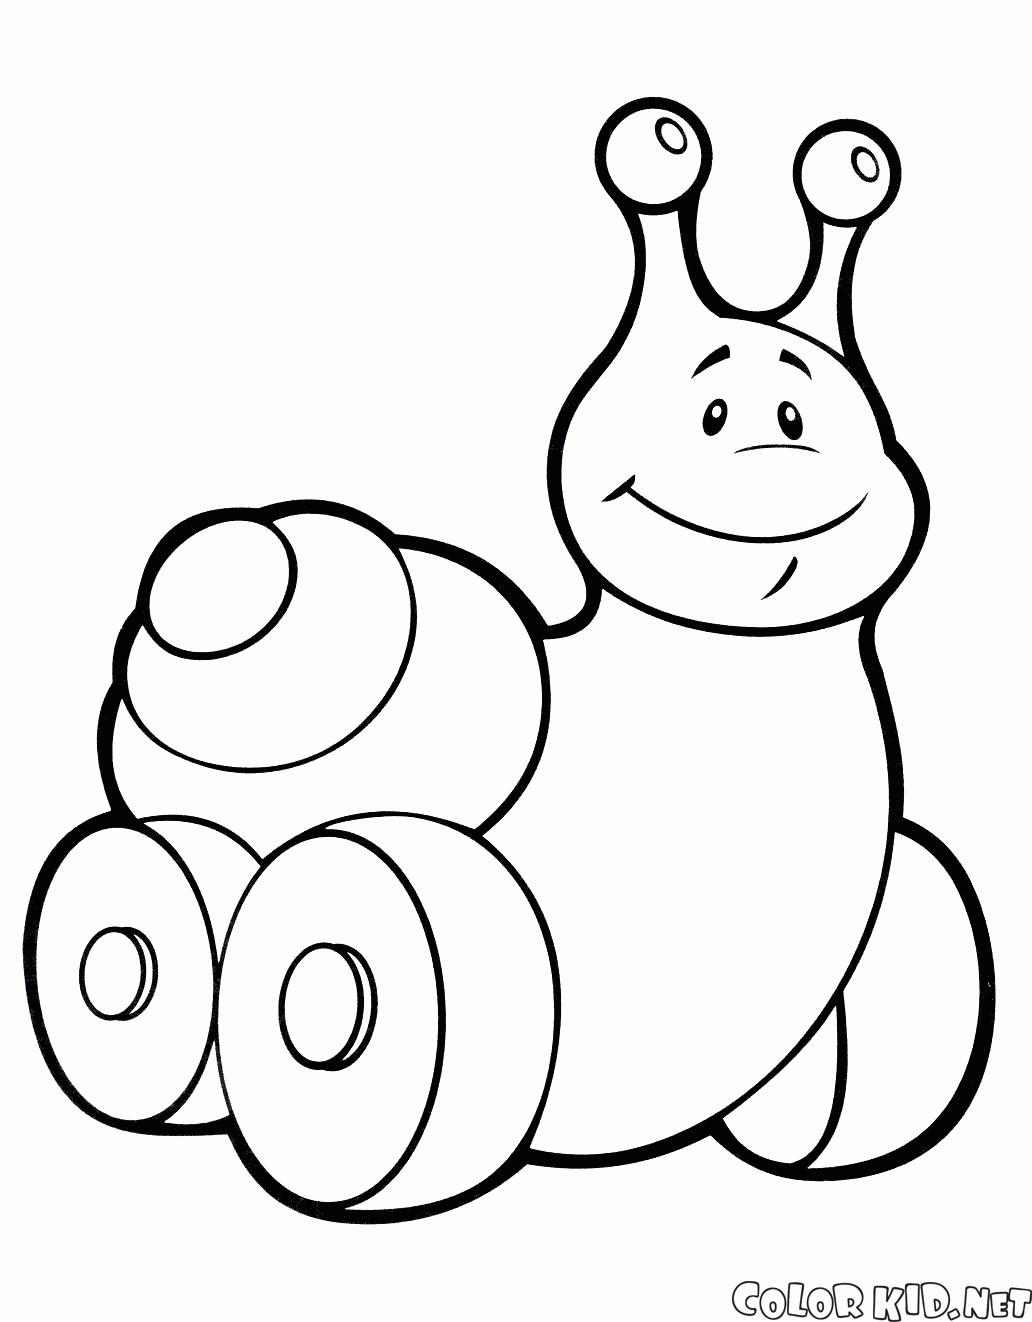 Toy snail